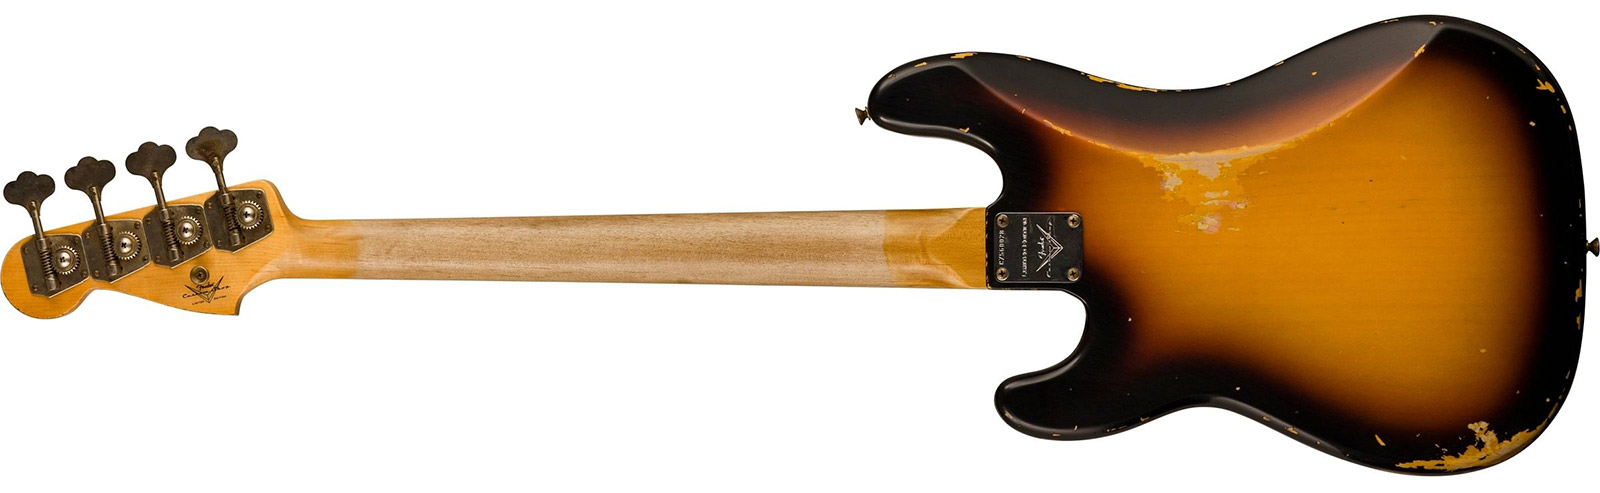 Fender Custom Shop Precision Bass 1963 Rw - Heavy Relic Aged 3-color Sunburst - Basse Électrique Solid Body - Variation 1